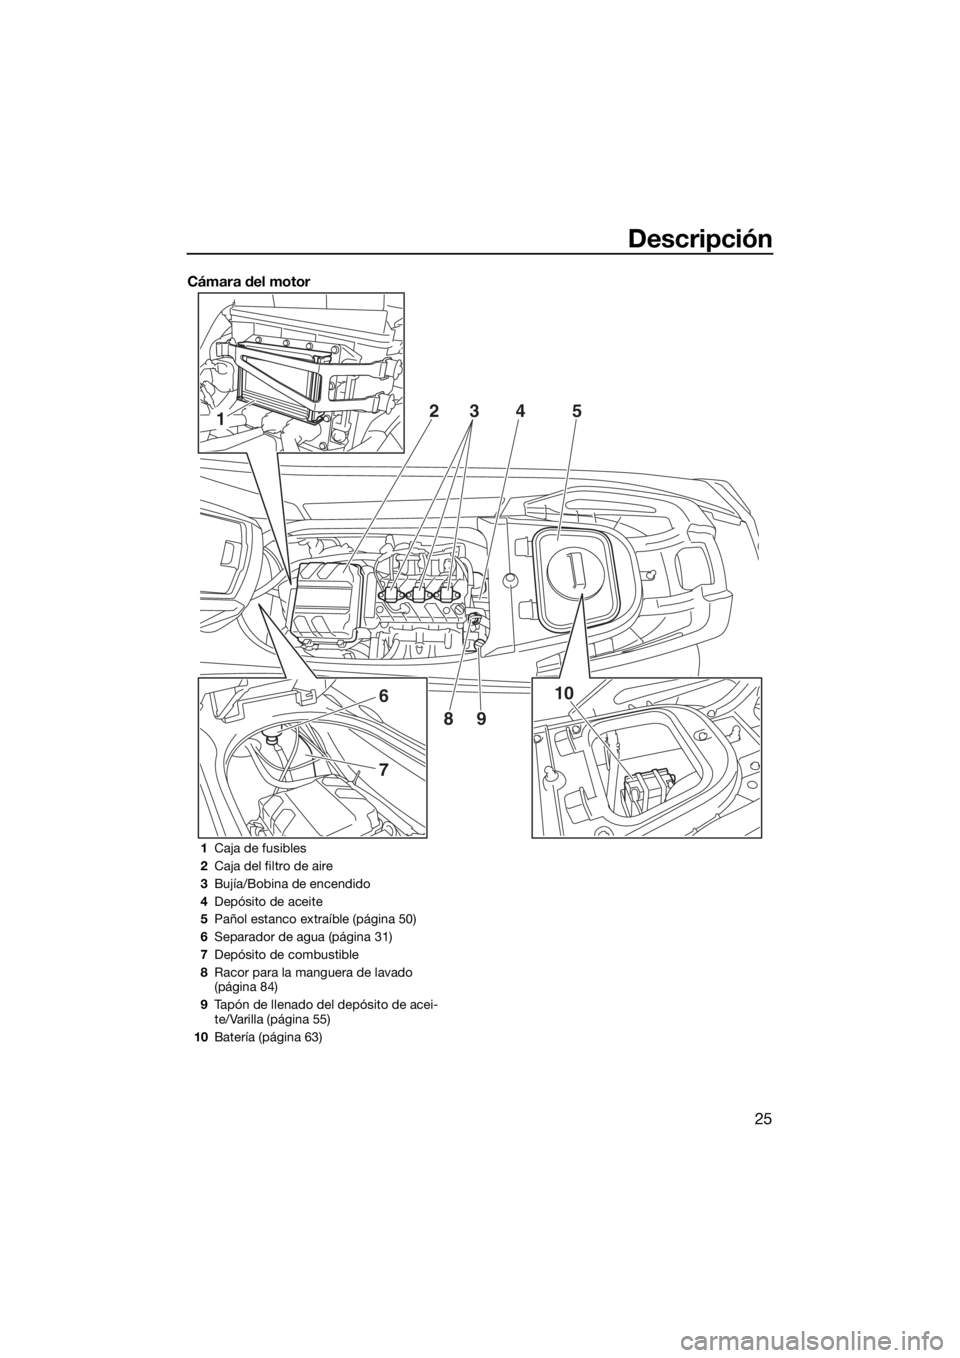 YAMAHA VX CRUISER 2020  Manuale de Empleo (in Spanish) Descripción
25
Cámara del motor
1
6
7
10 2
345
89
1Caja de fusibles
2Caja del filtro de aire
3Bujía/Bobina de encendido
4Depósito de aceite
5Pañol estanco extraíble (página 50)
6Separador de ag